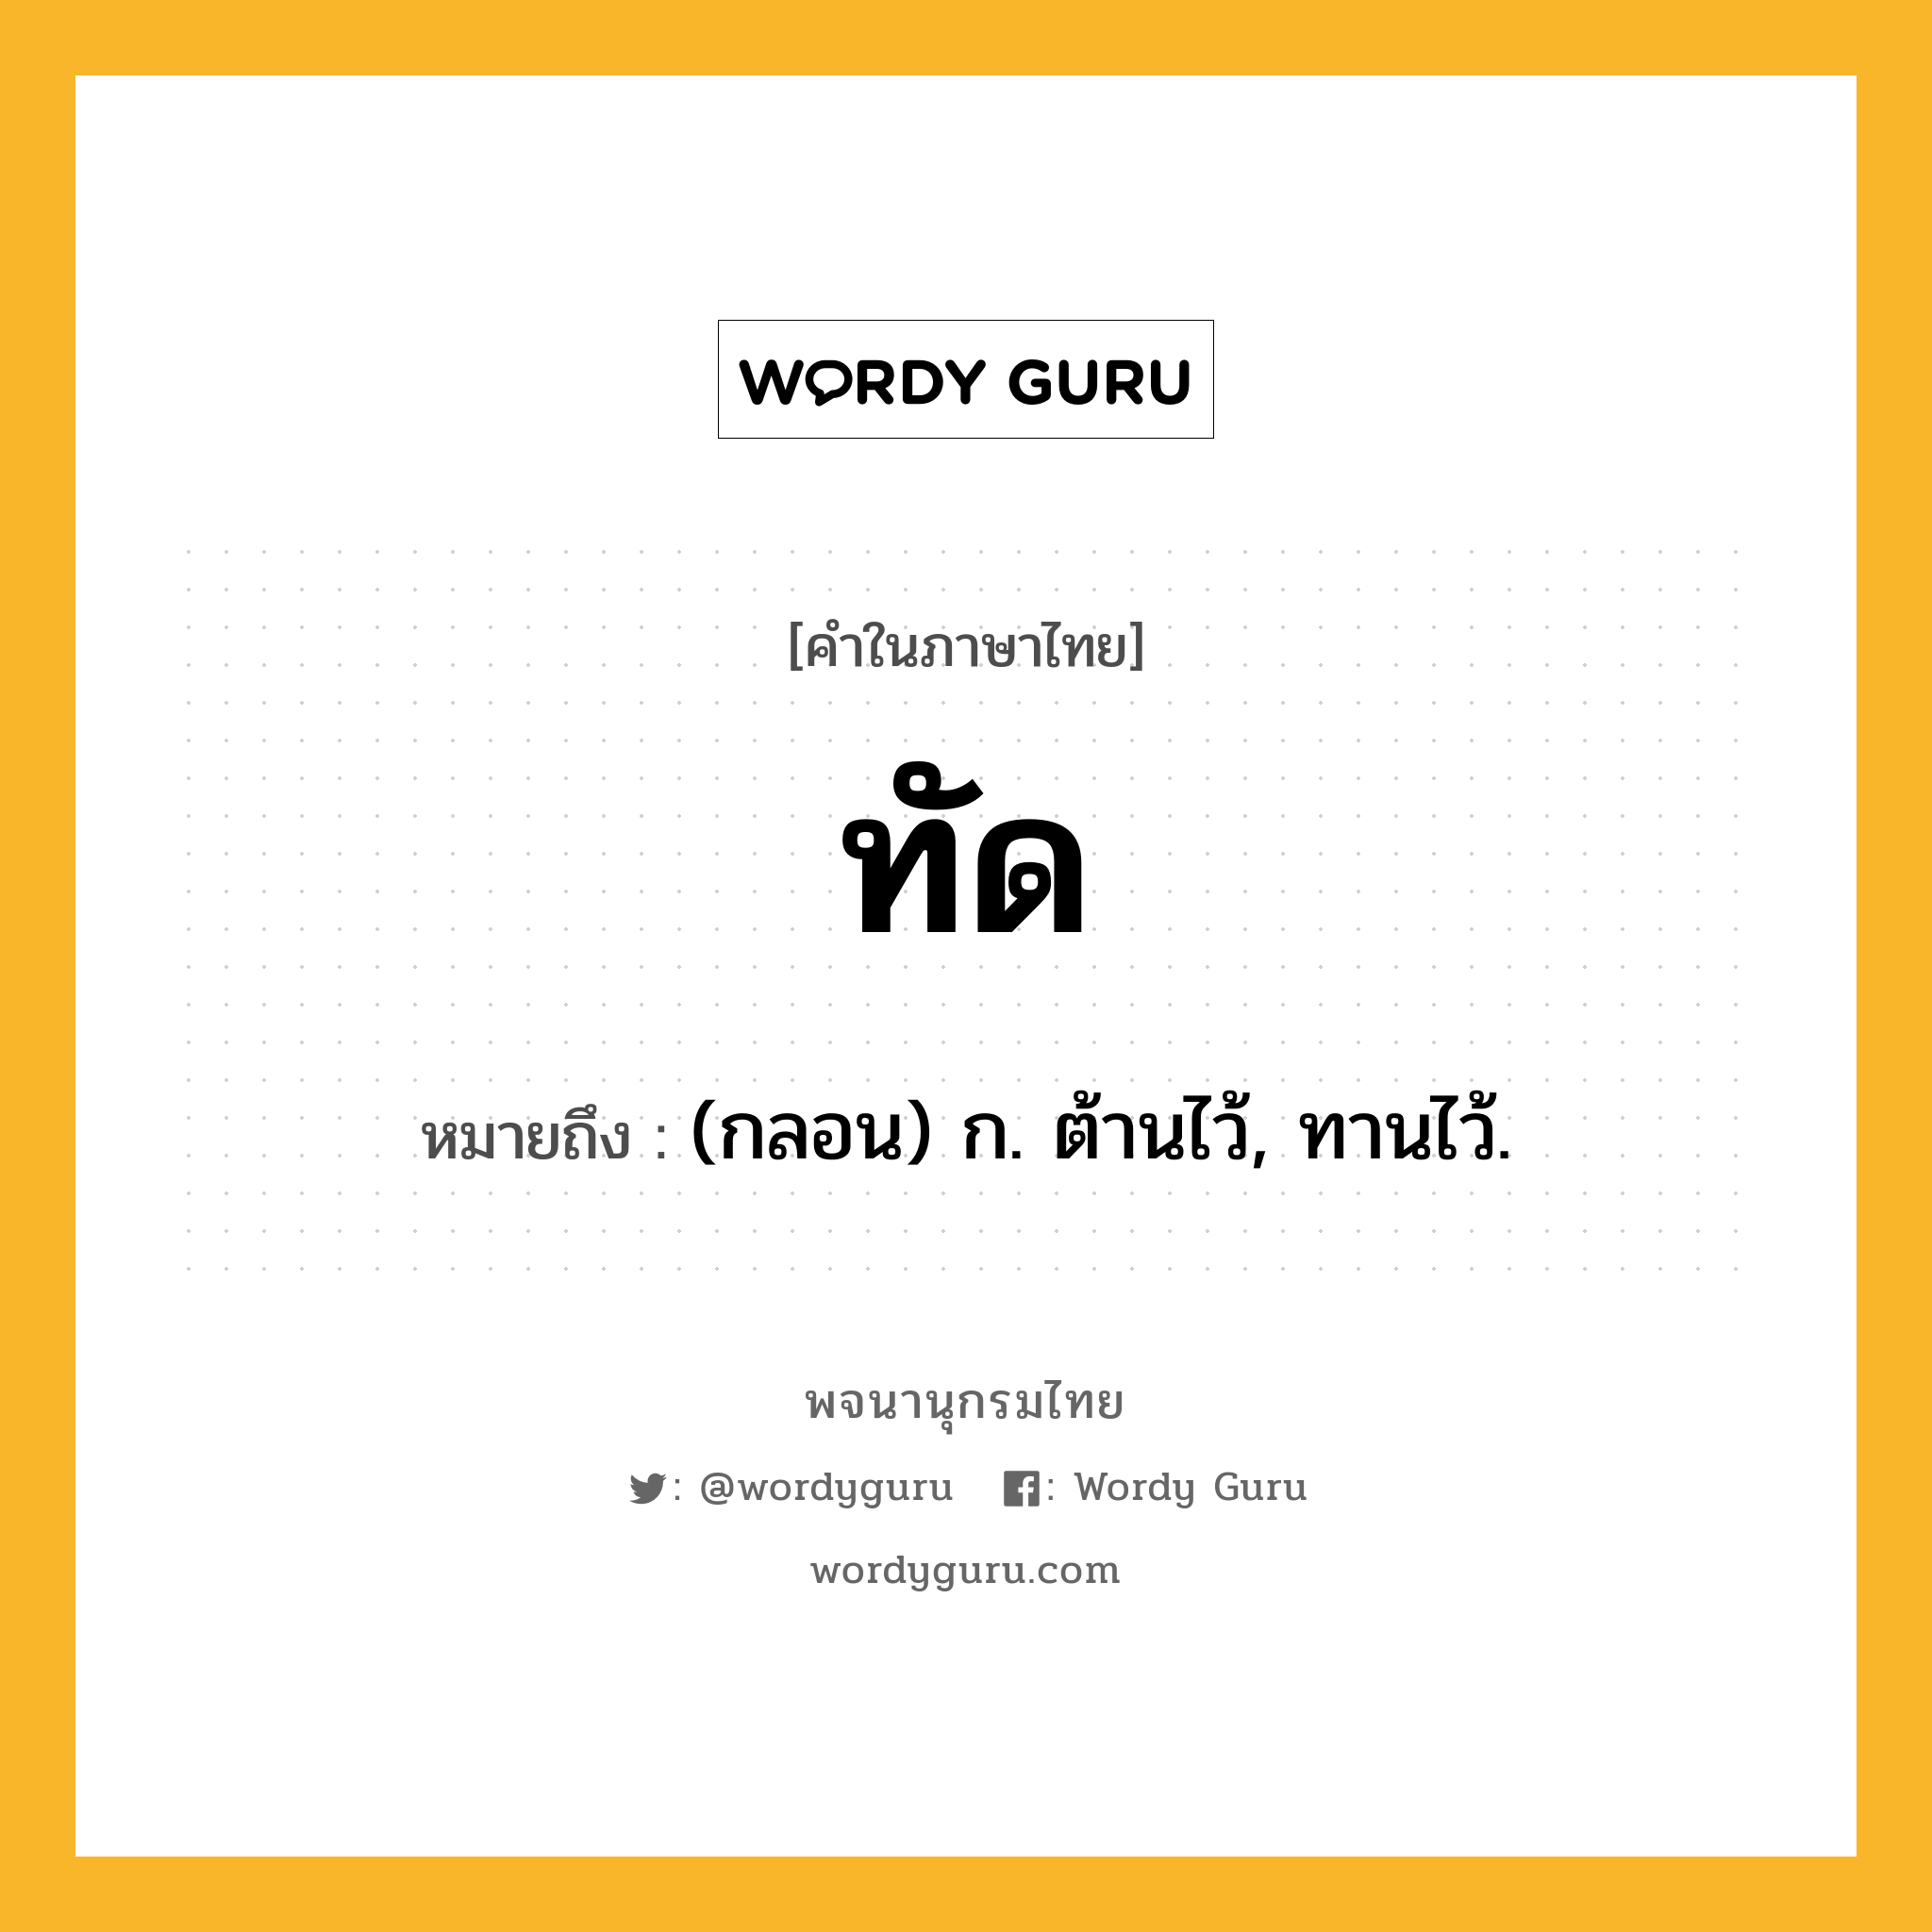 ทัด ความหมาย หมายถึงอะไร?, คำในภาษาไทย ทัด หมายถึง (กลอน) ก. ต้านไว้, ทานไว้.